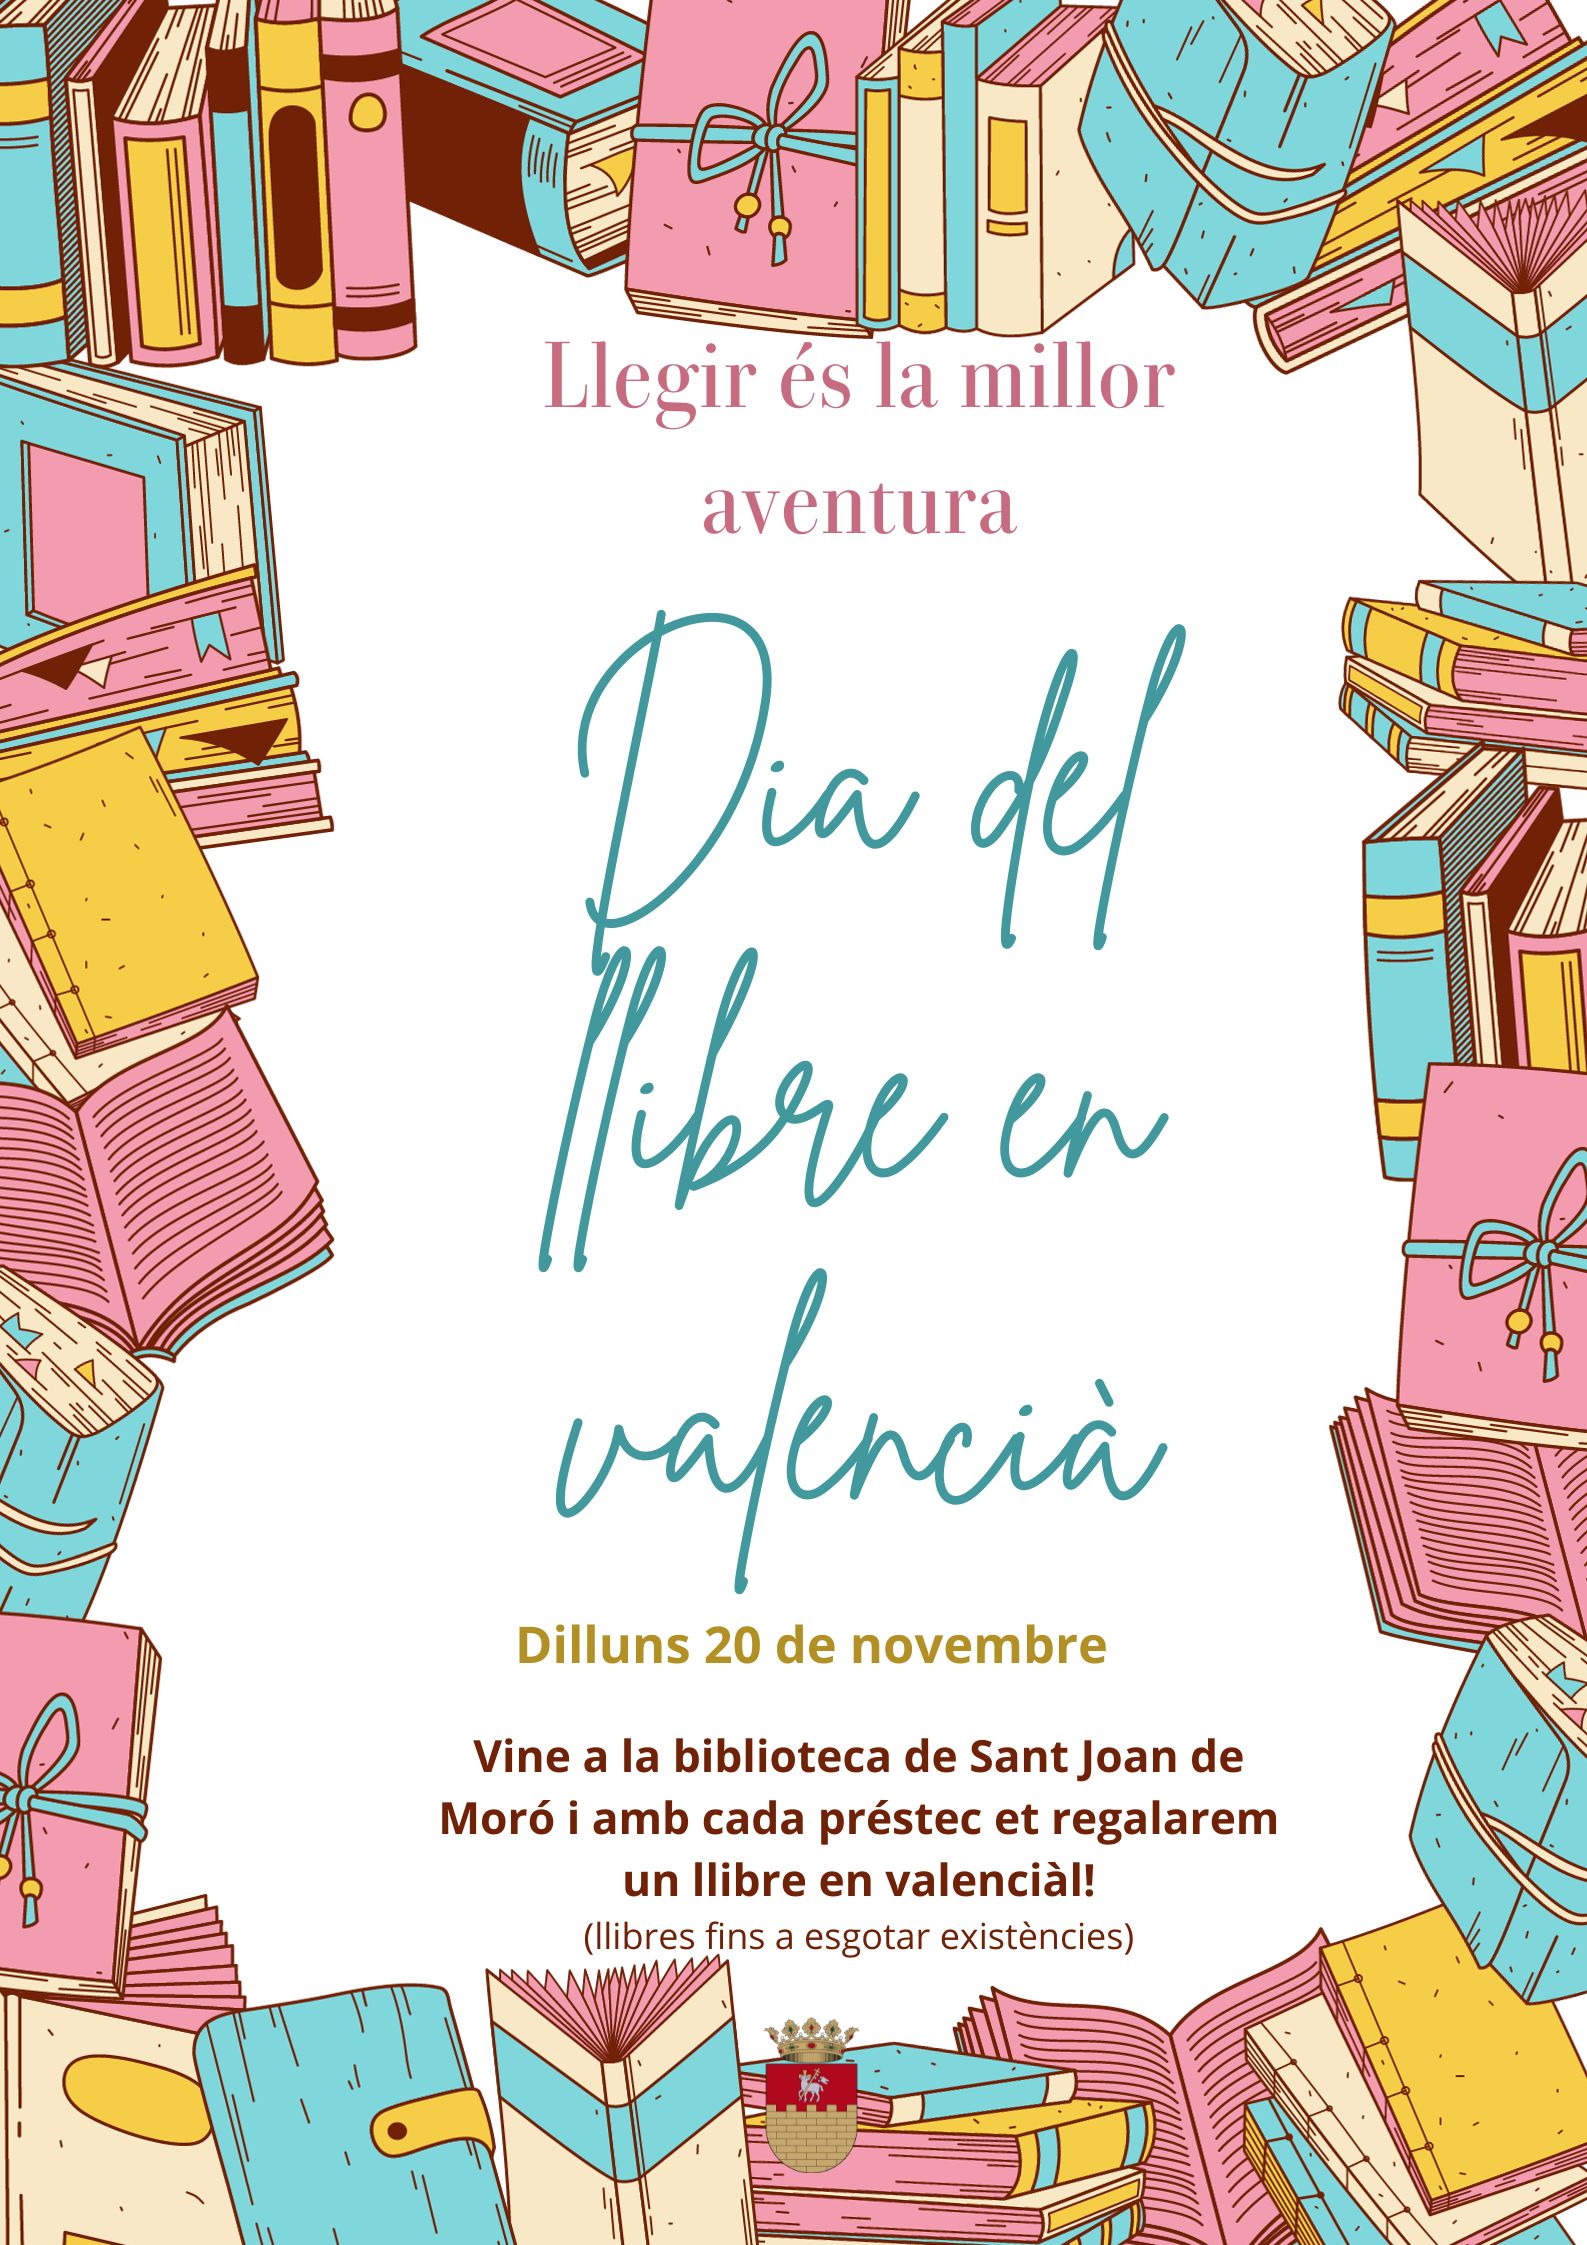 Dia del libro en valenciano